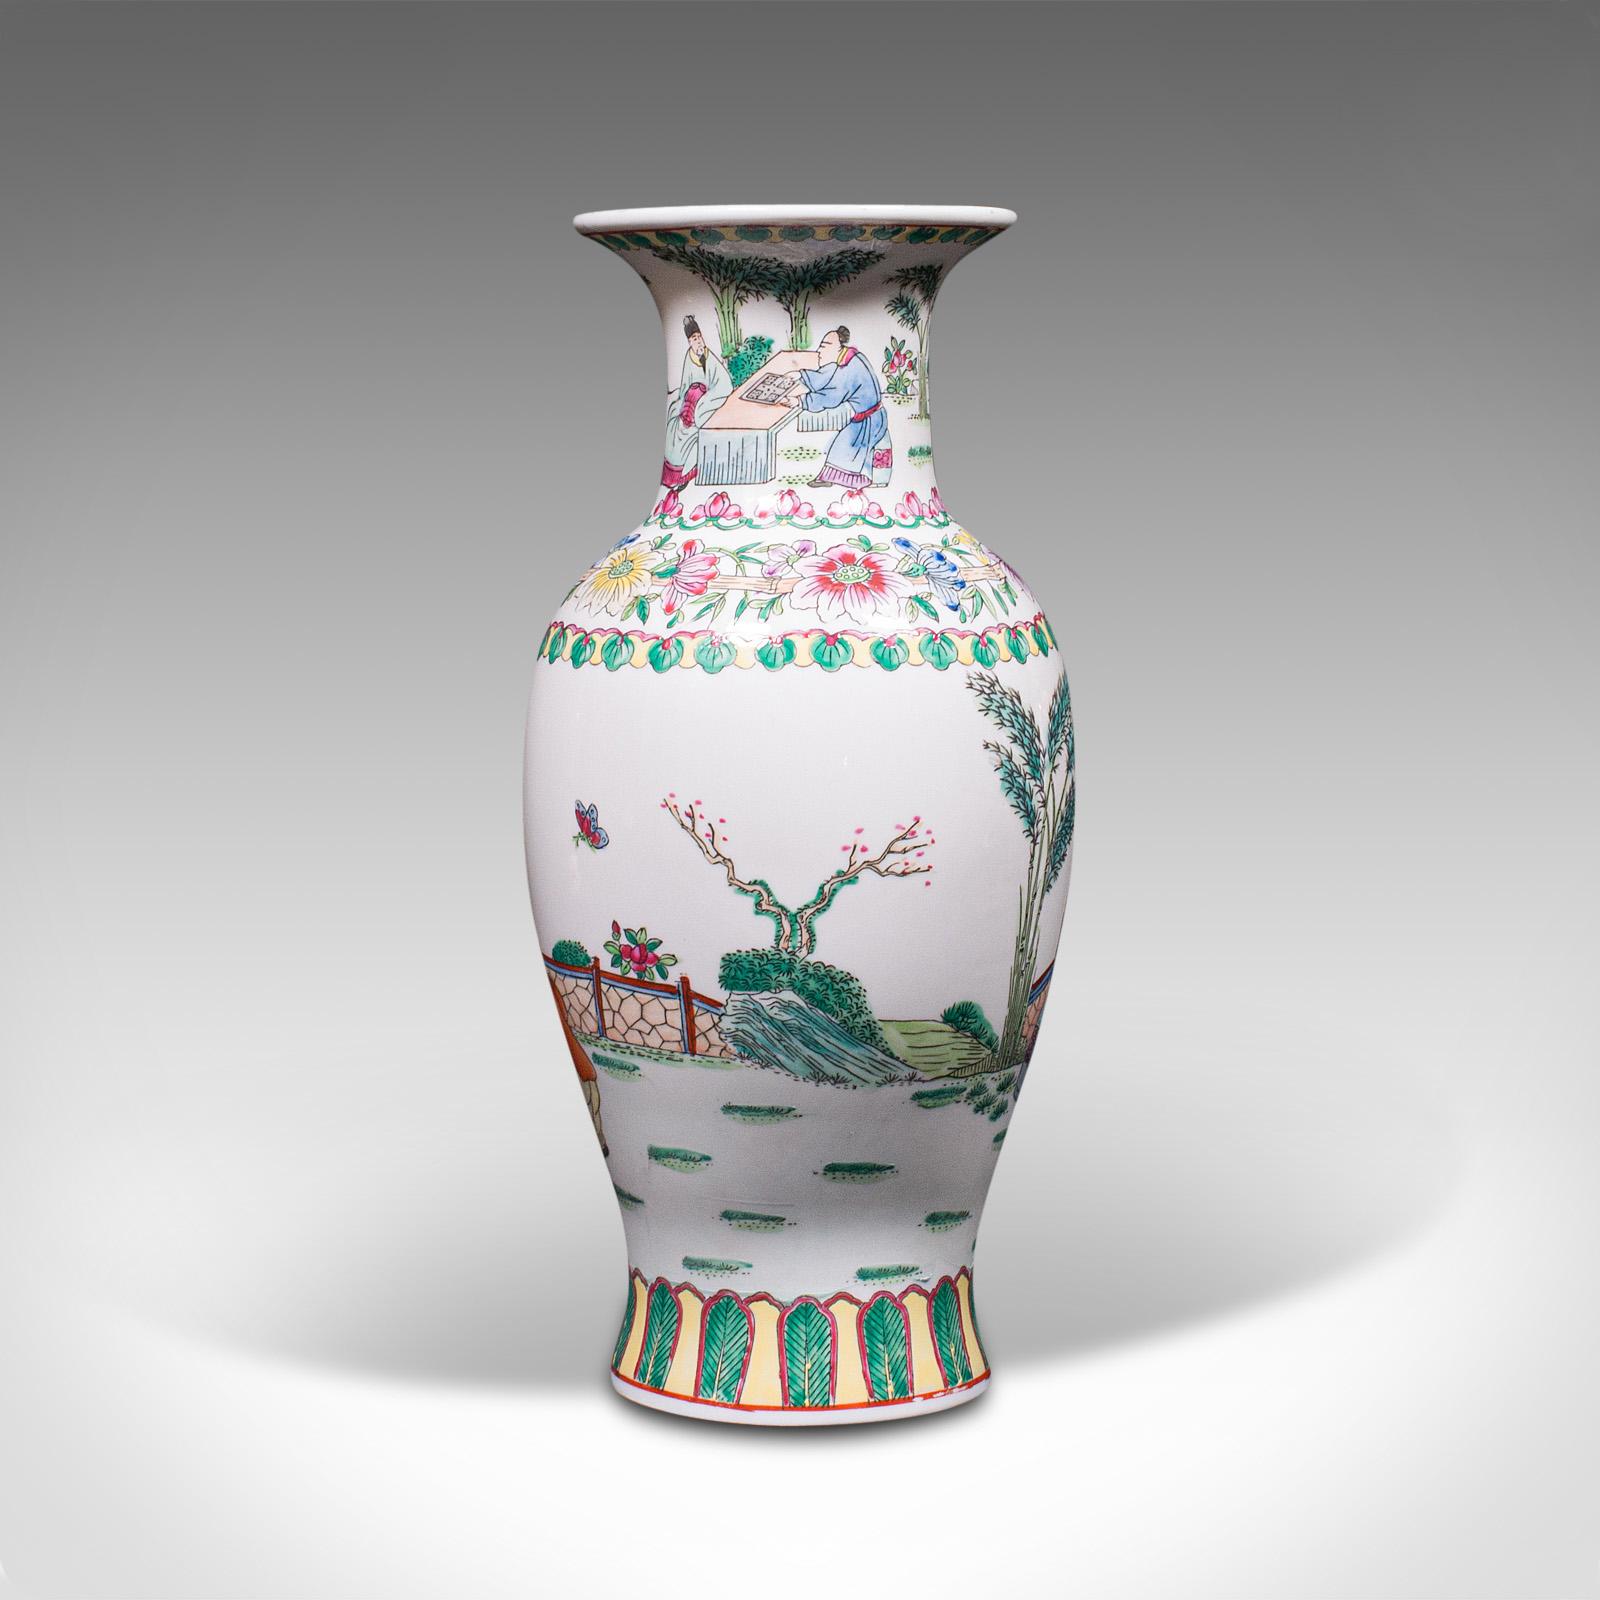 Große Porzellan Hand Porzellan Keramik Hellgrau als Halter oder Deko Objekt 